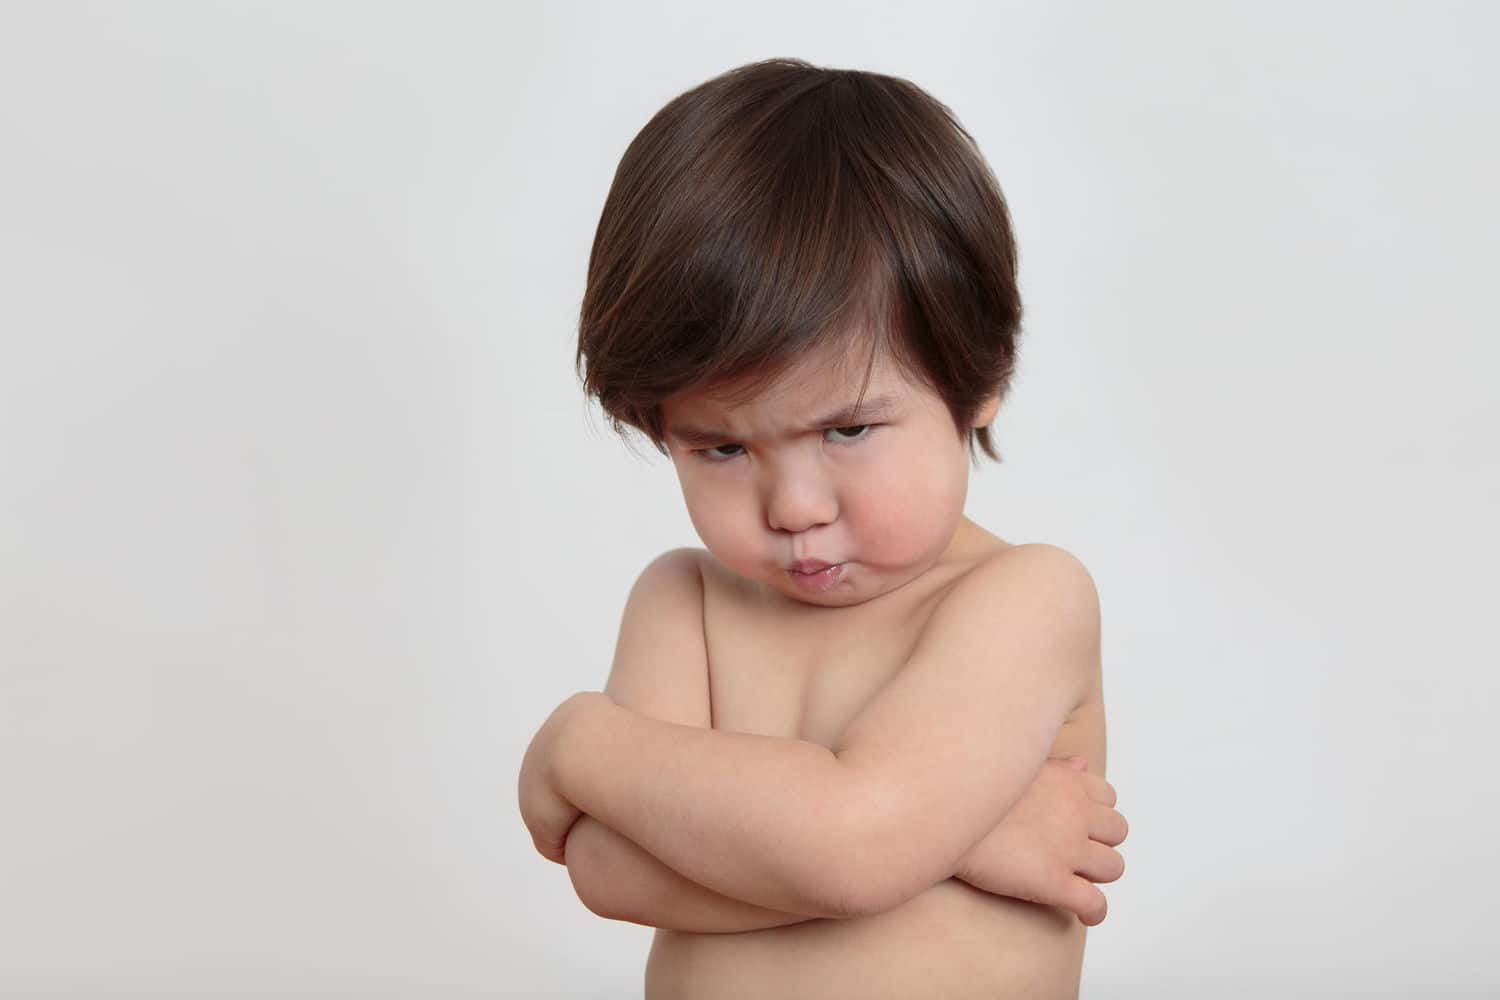 당신의 아이는 쉽게 화를 내고 있습니까? 이를 극복하기 위한 6가지 팁